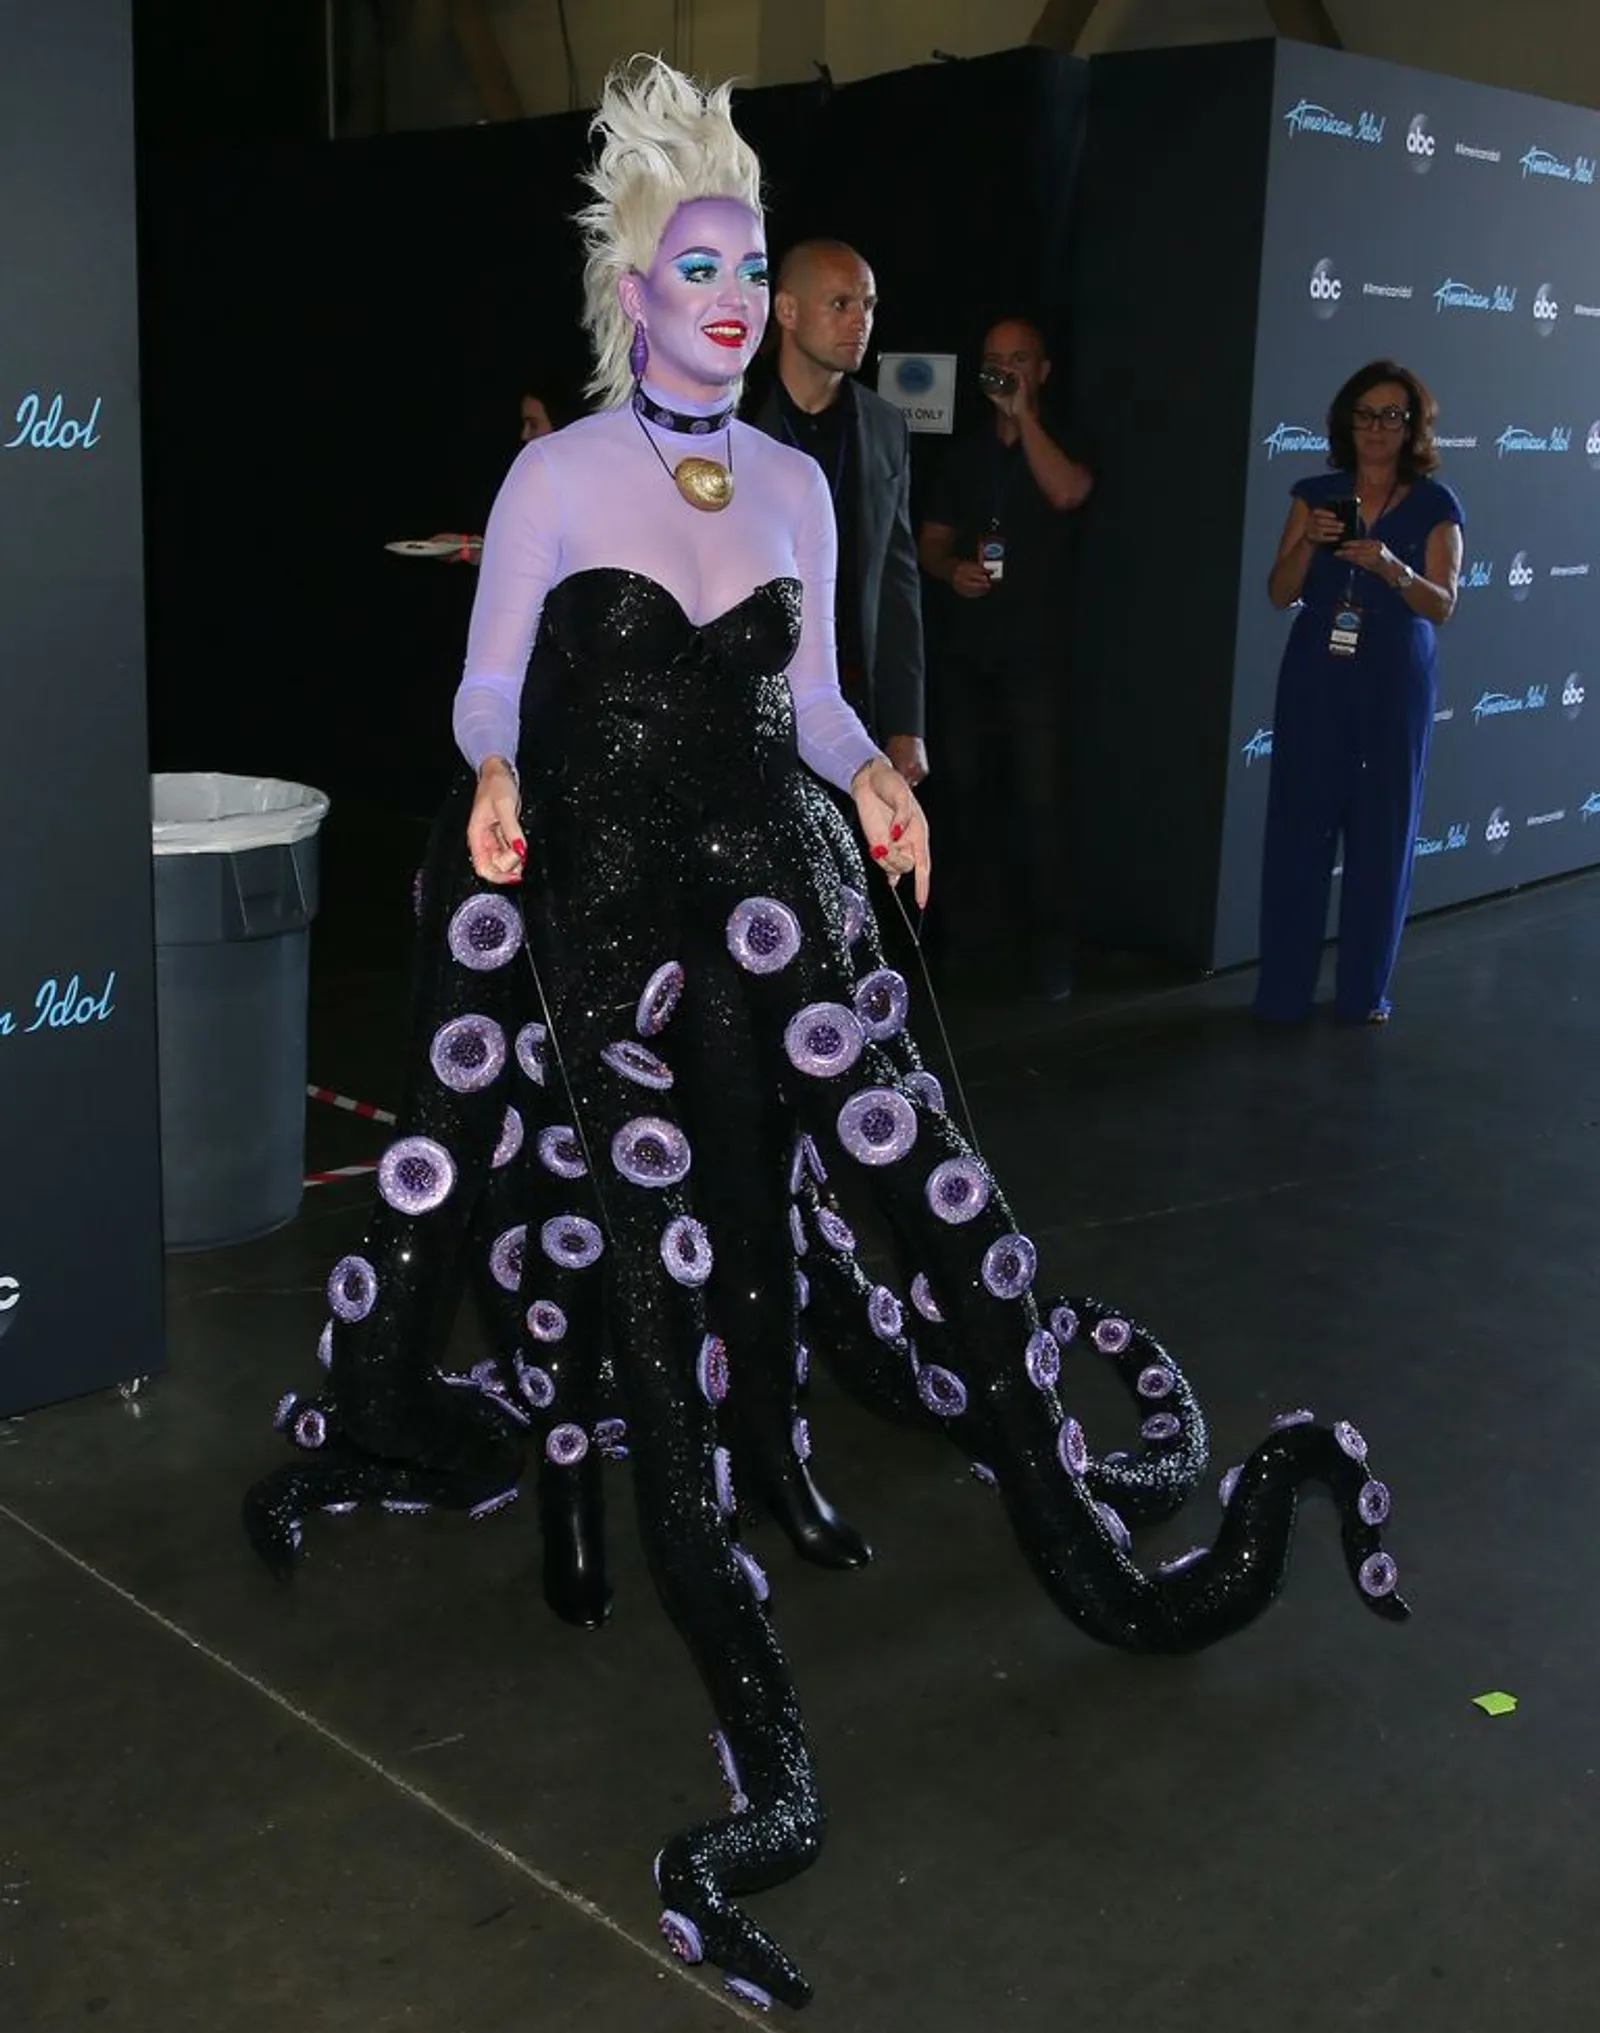 Deretan Kostum Nyeleneh yang Pernah Dipakai Katy Perry